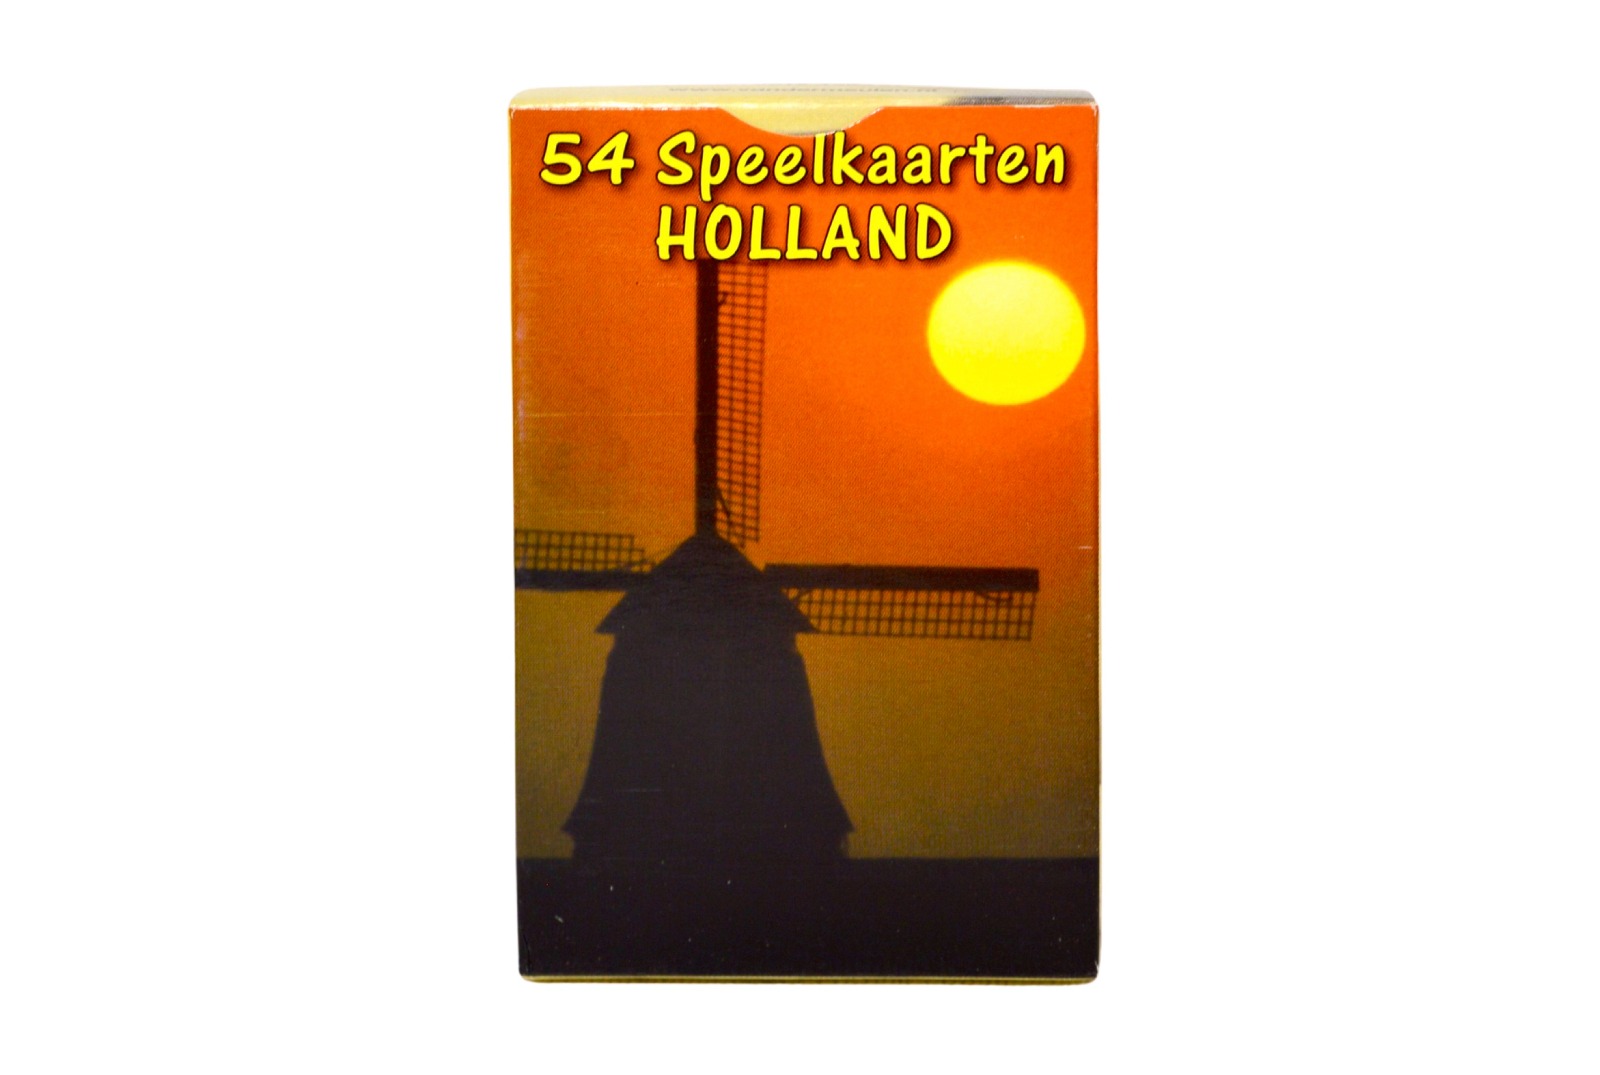 Holland speelkaarten